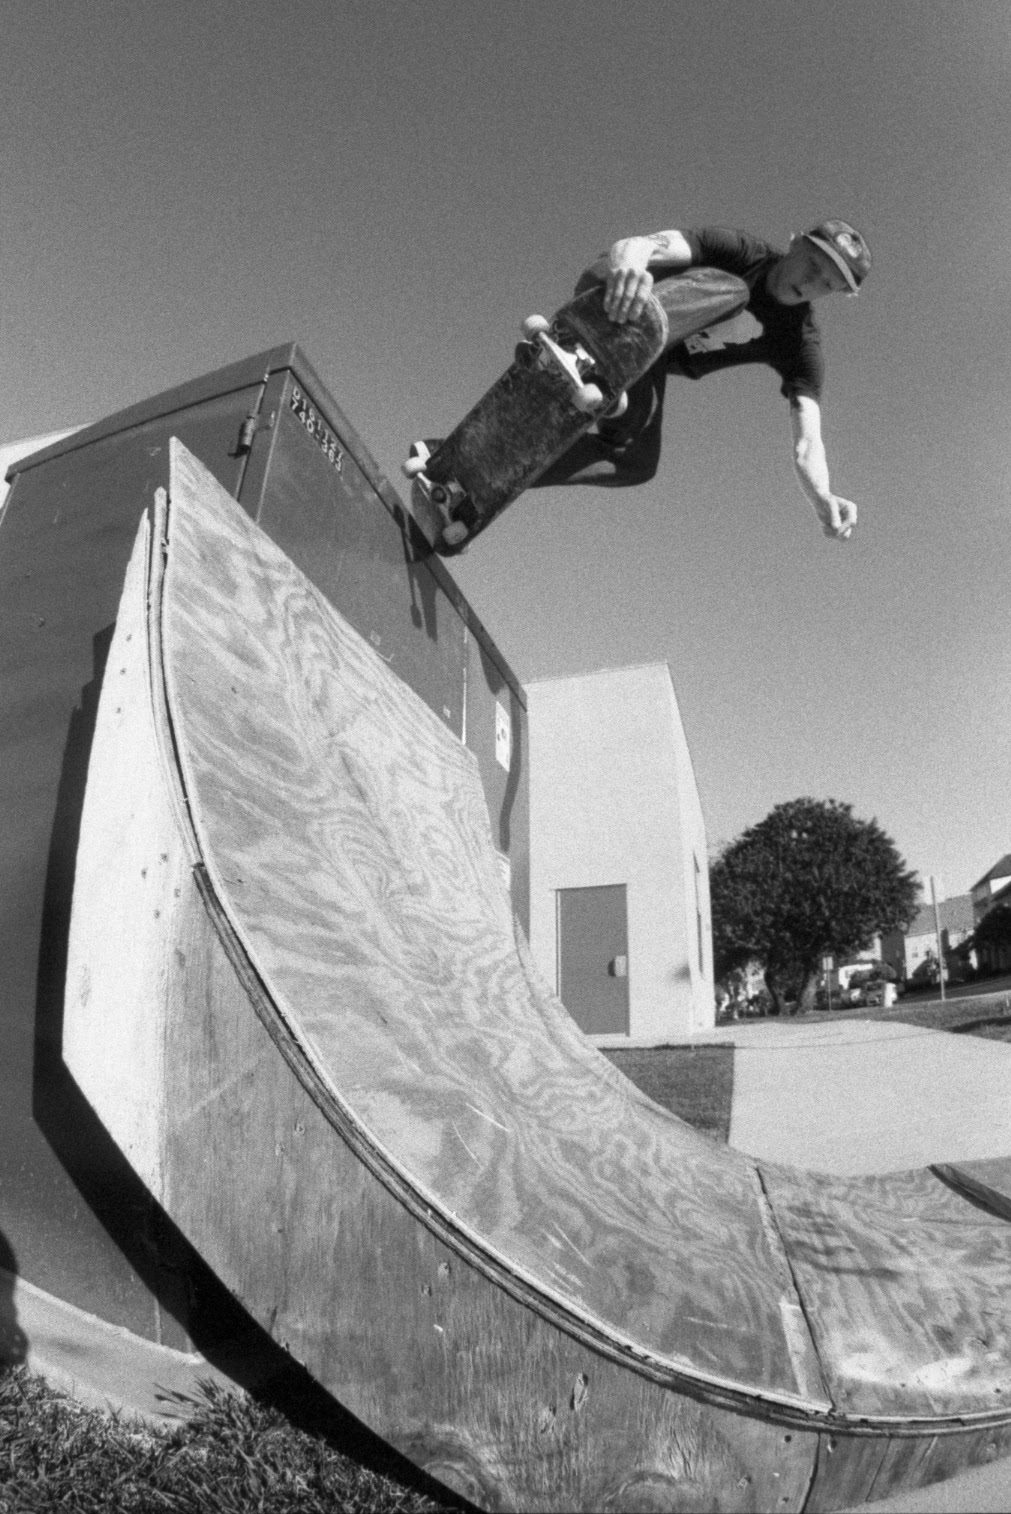 Matt Swanguen Vegan Skateboarder